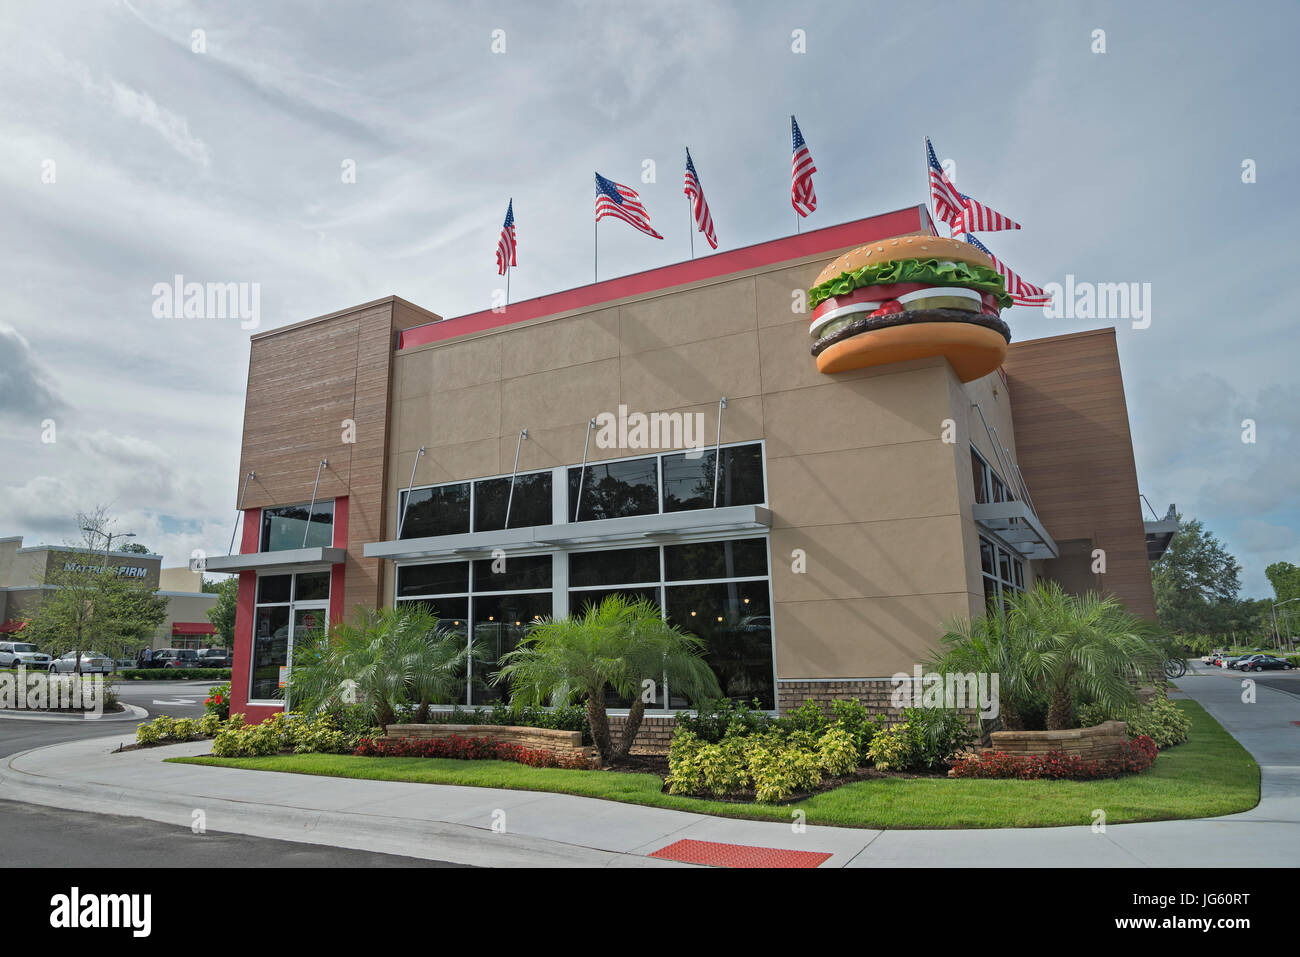 Los restaurantes de comida rápida Burger King ha construido un nuevo restaurante en Gainesville, la Florida. Foto de stock